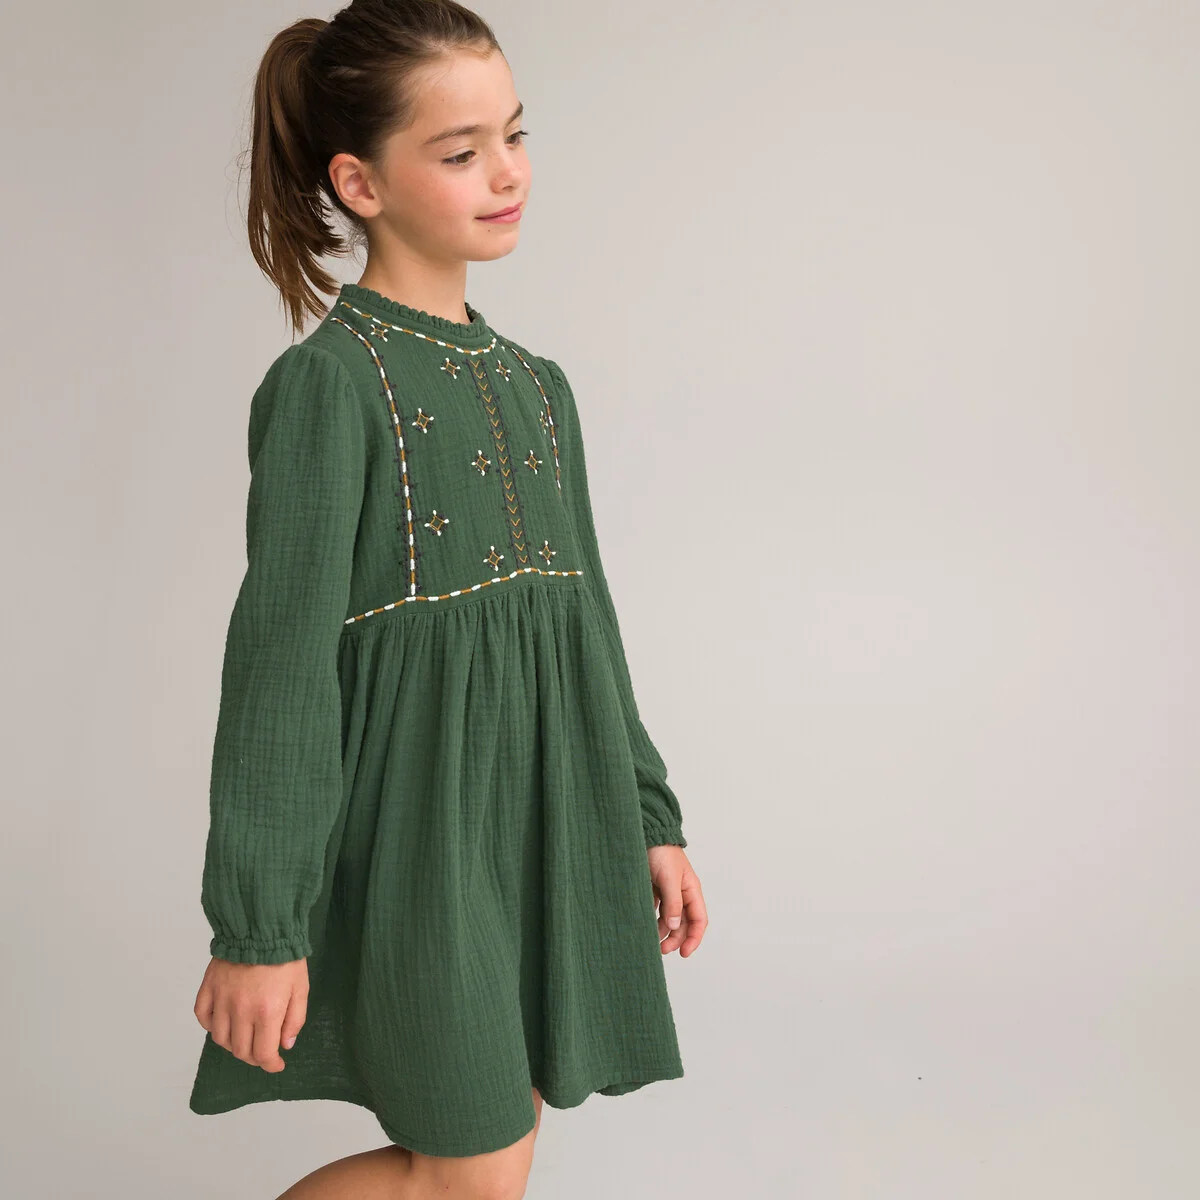 Детская одежда, верхняя одежда / Каталог товаров / Интернет магазин одежды Комод